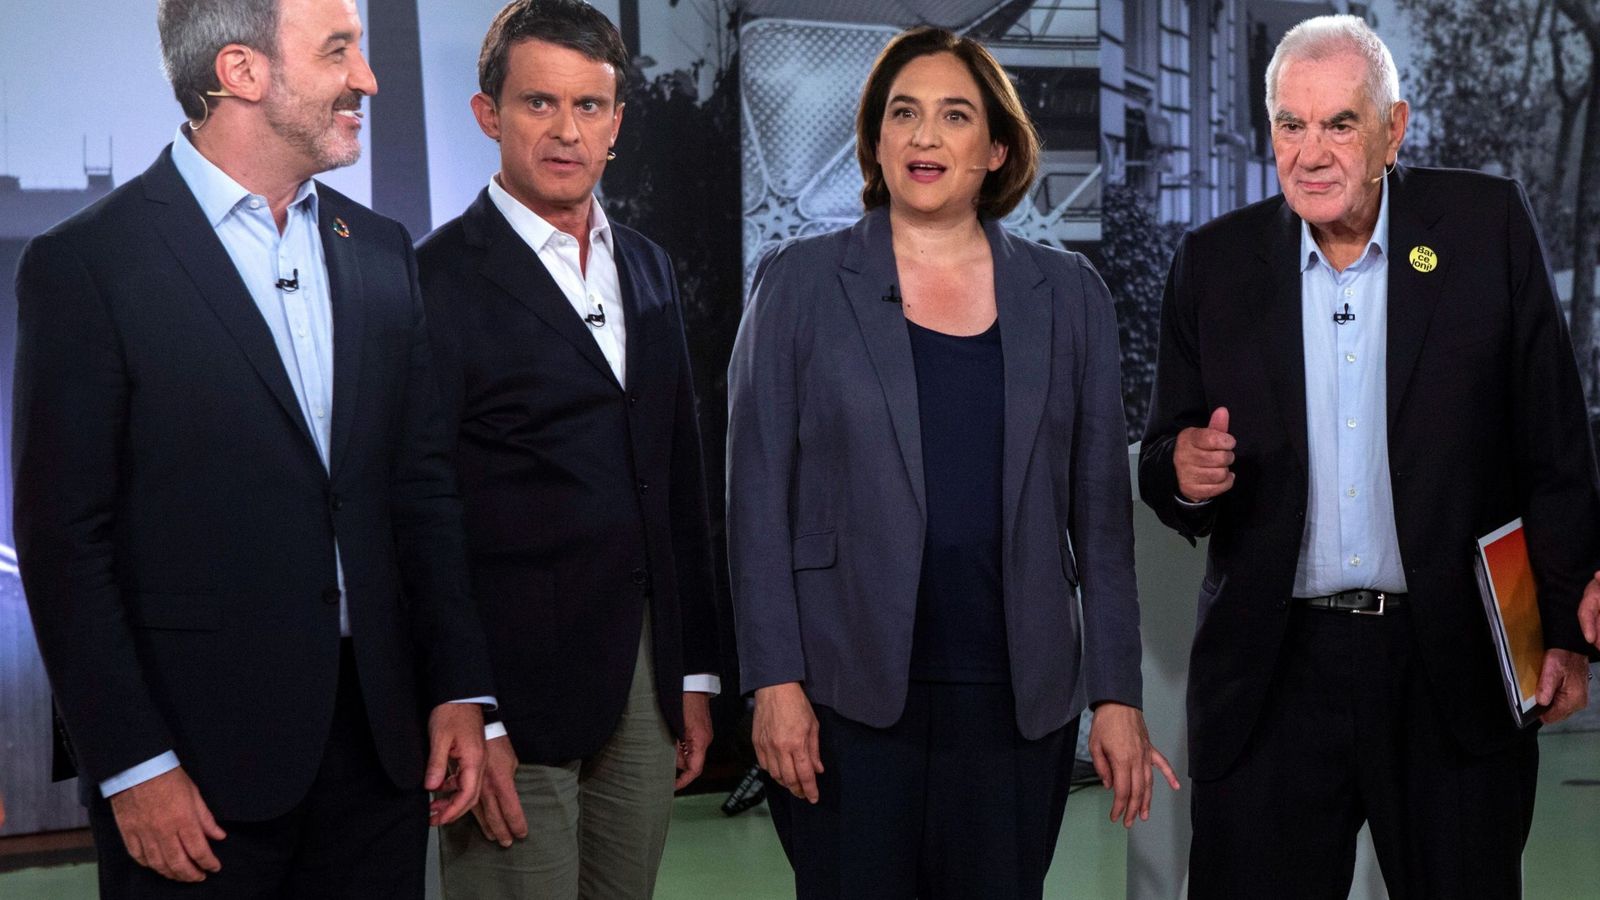 Foto: Los candidatos a la alcaldía de Barcelona, Jaume Collboni (PSC), Manuel Valls (BCN-Cs), Ada Colau (BComú) y Ernest Maragall (ERC) posan para los medios de comunicación antes del debate electoral. (EFE)